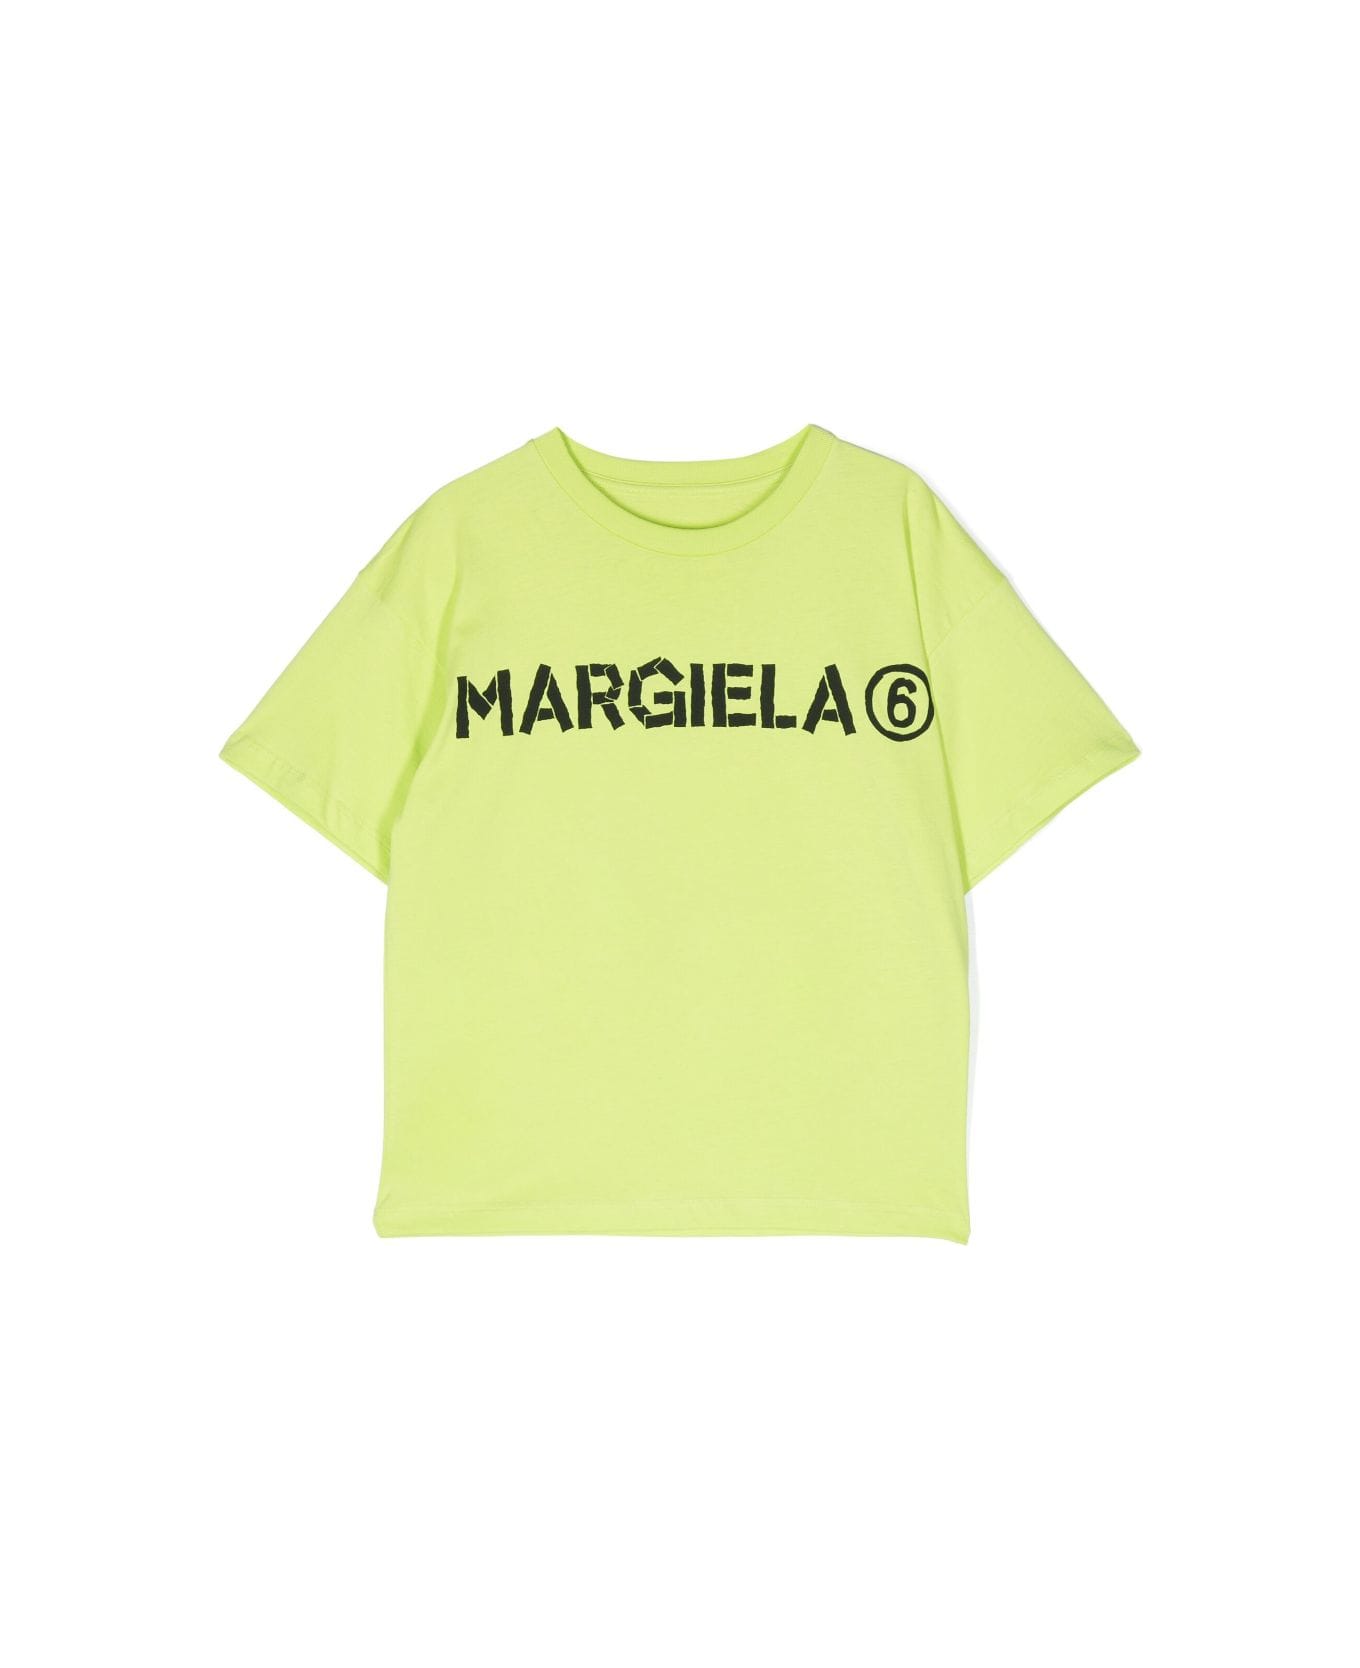 MM6 Maison Margiela Mm6t65u T-shirt - Slime Green